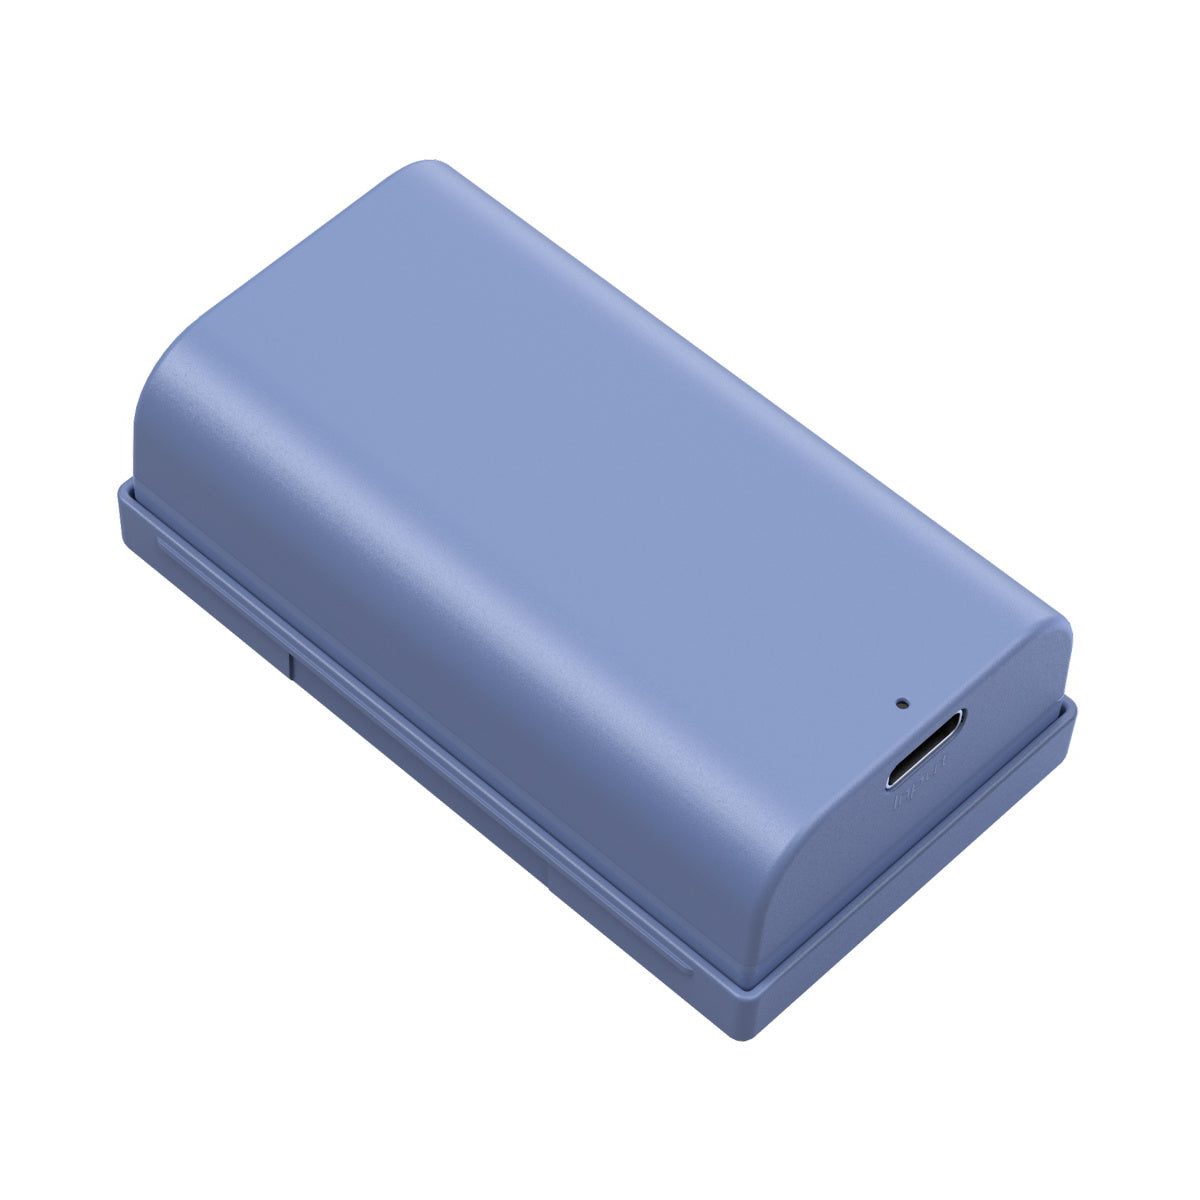 Smallrig NP-F550 USB-C batareya